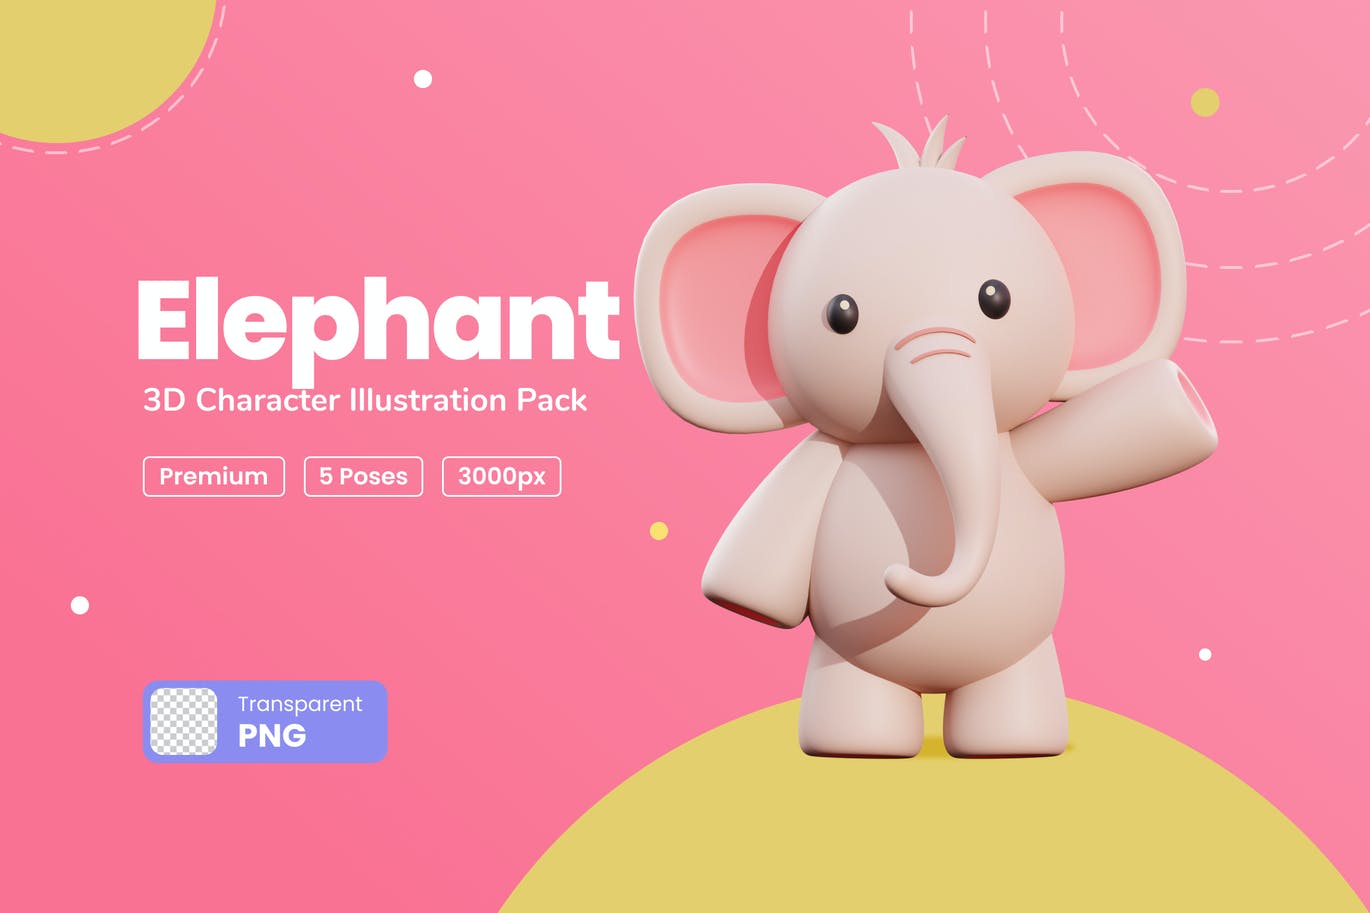 三维可爱小象卡通形象插画素材 Elephant 3D Cha